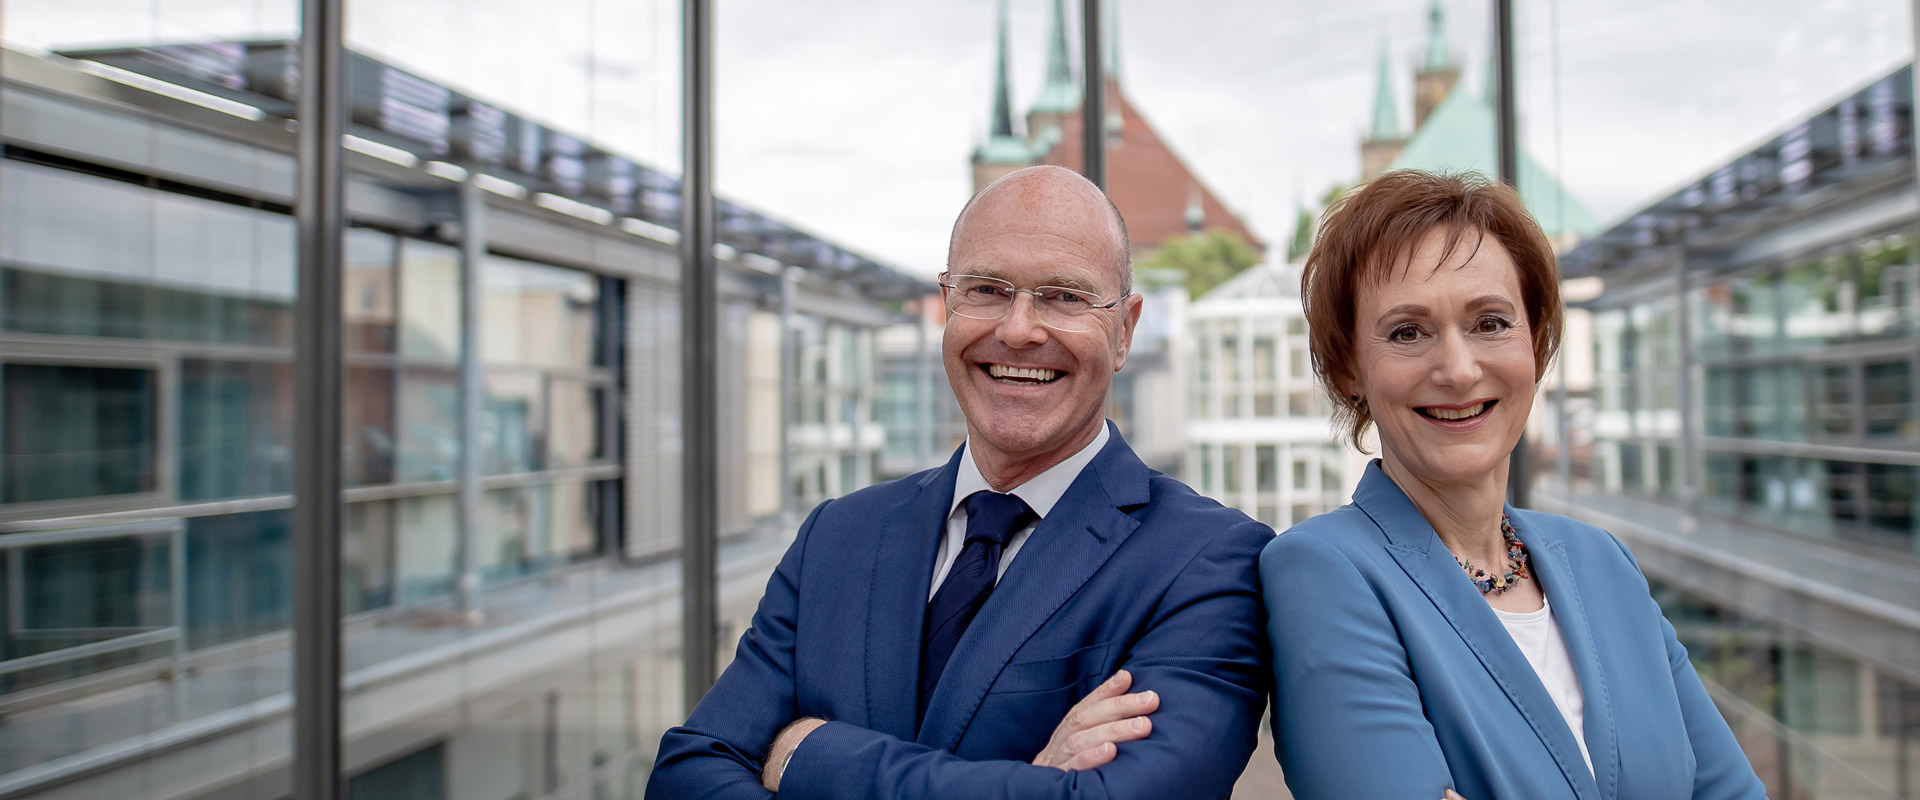 Geschäftsführung der LEG: Andreas Krey und Sabine Wosche